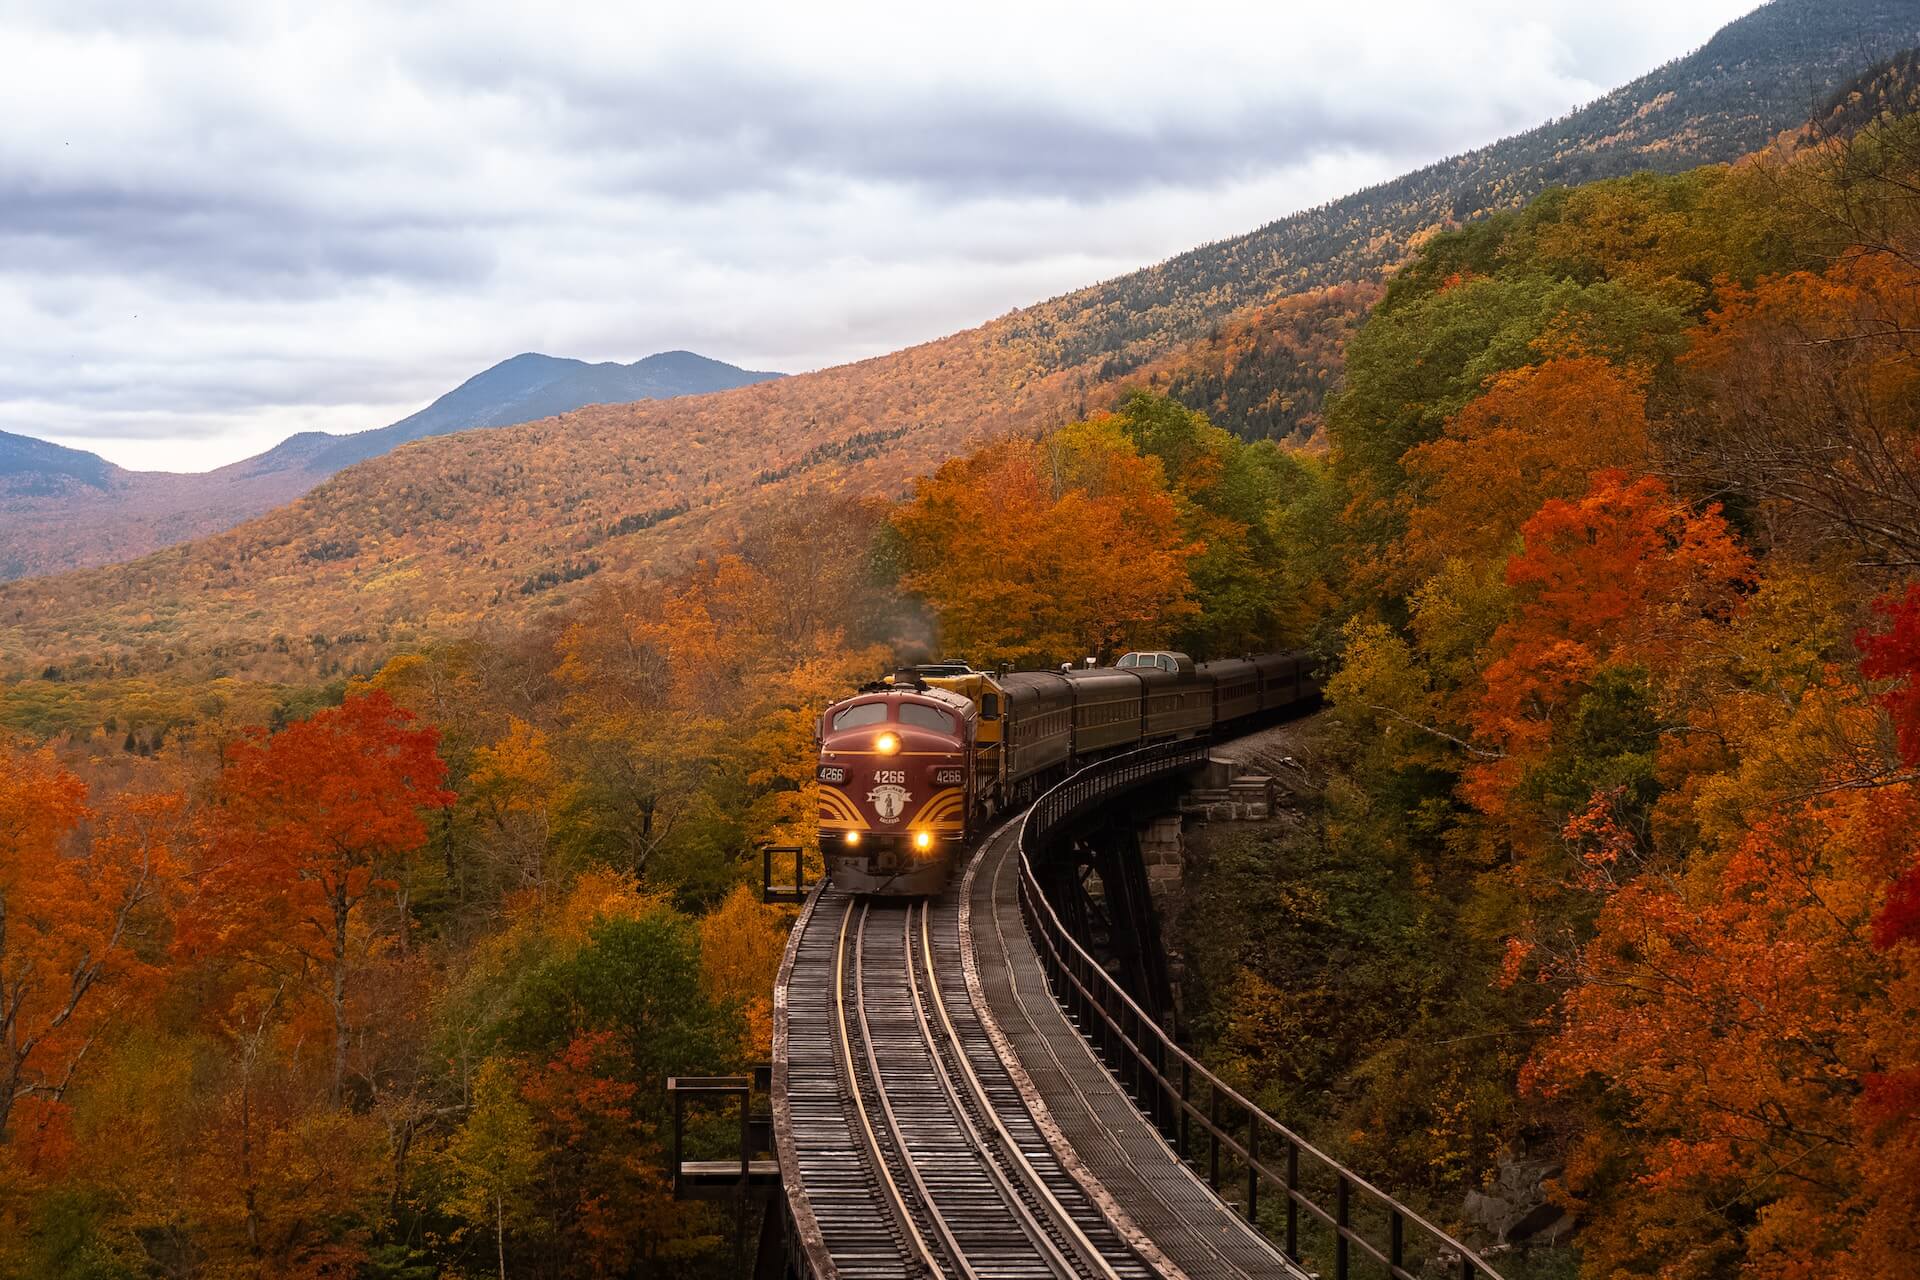 Train, fall foliage, New Hampshire